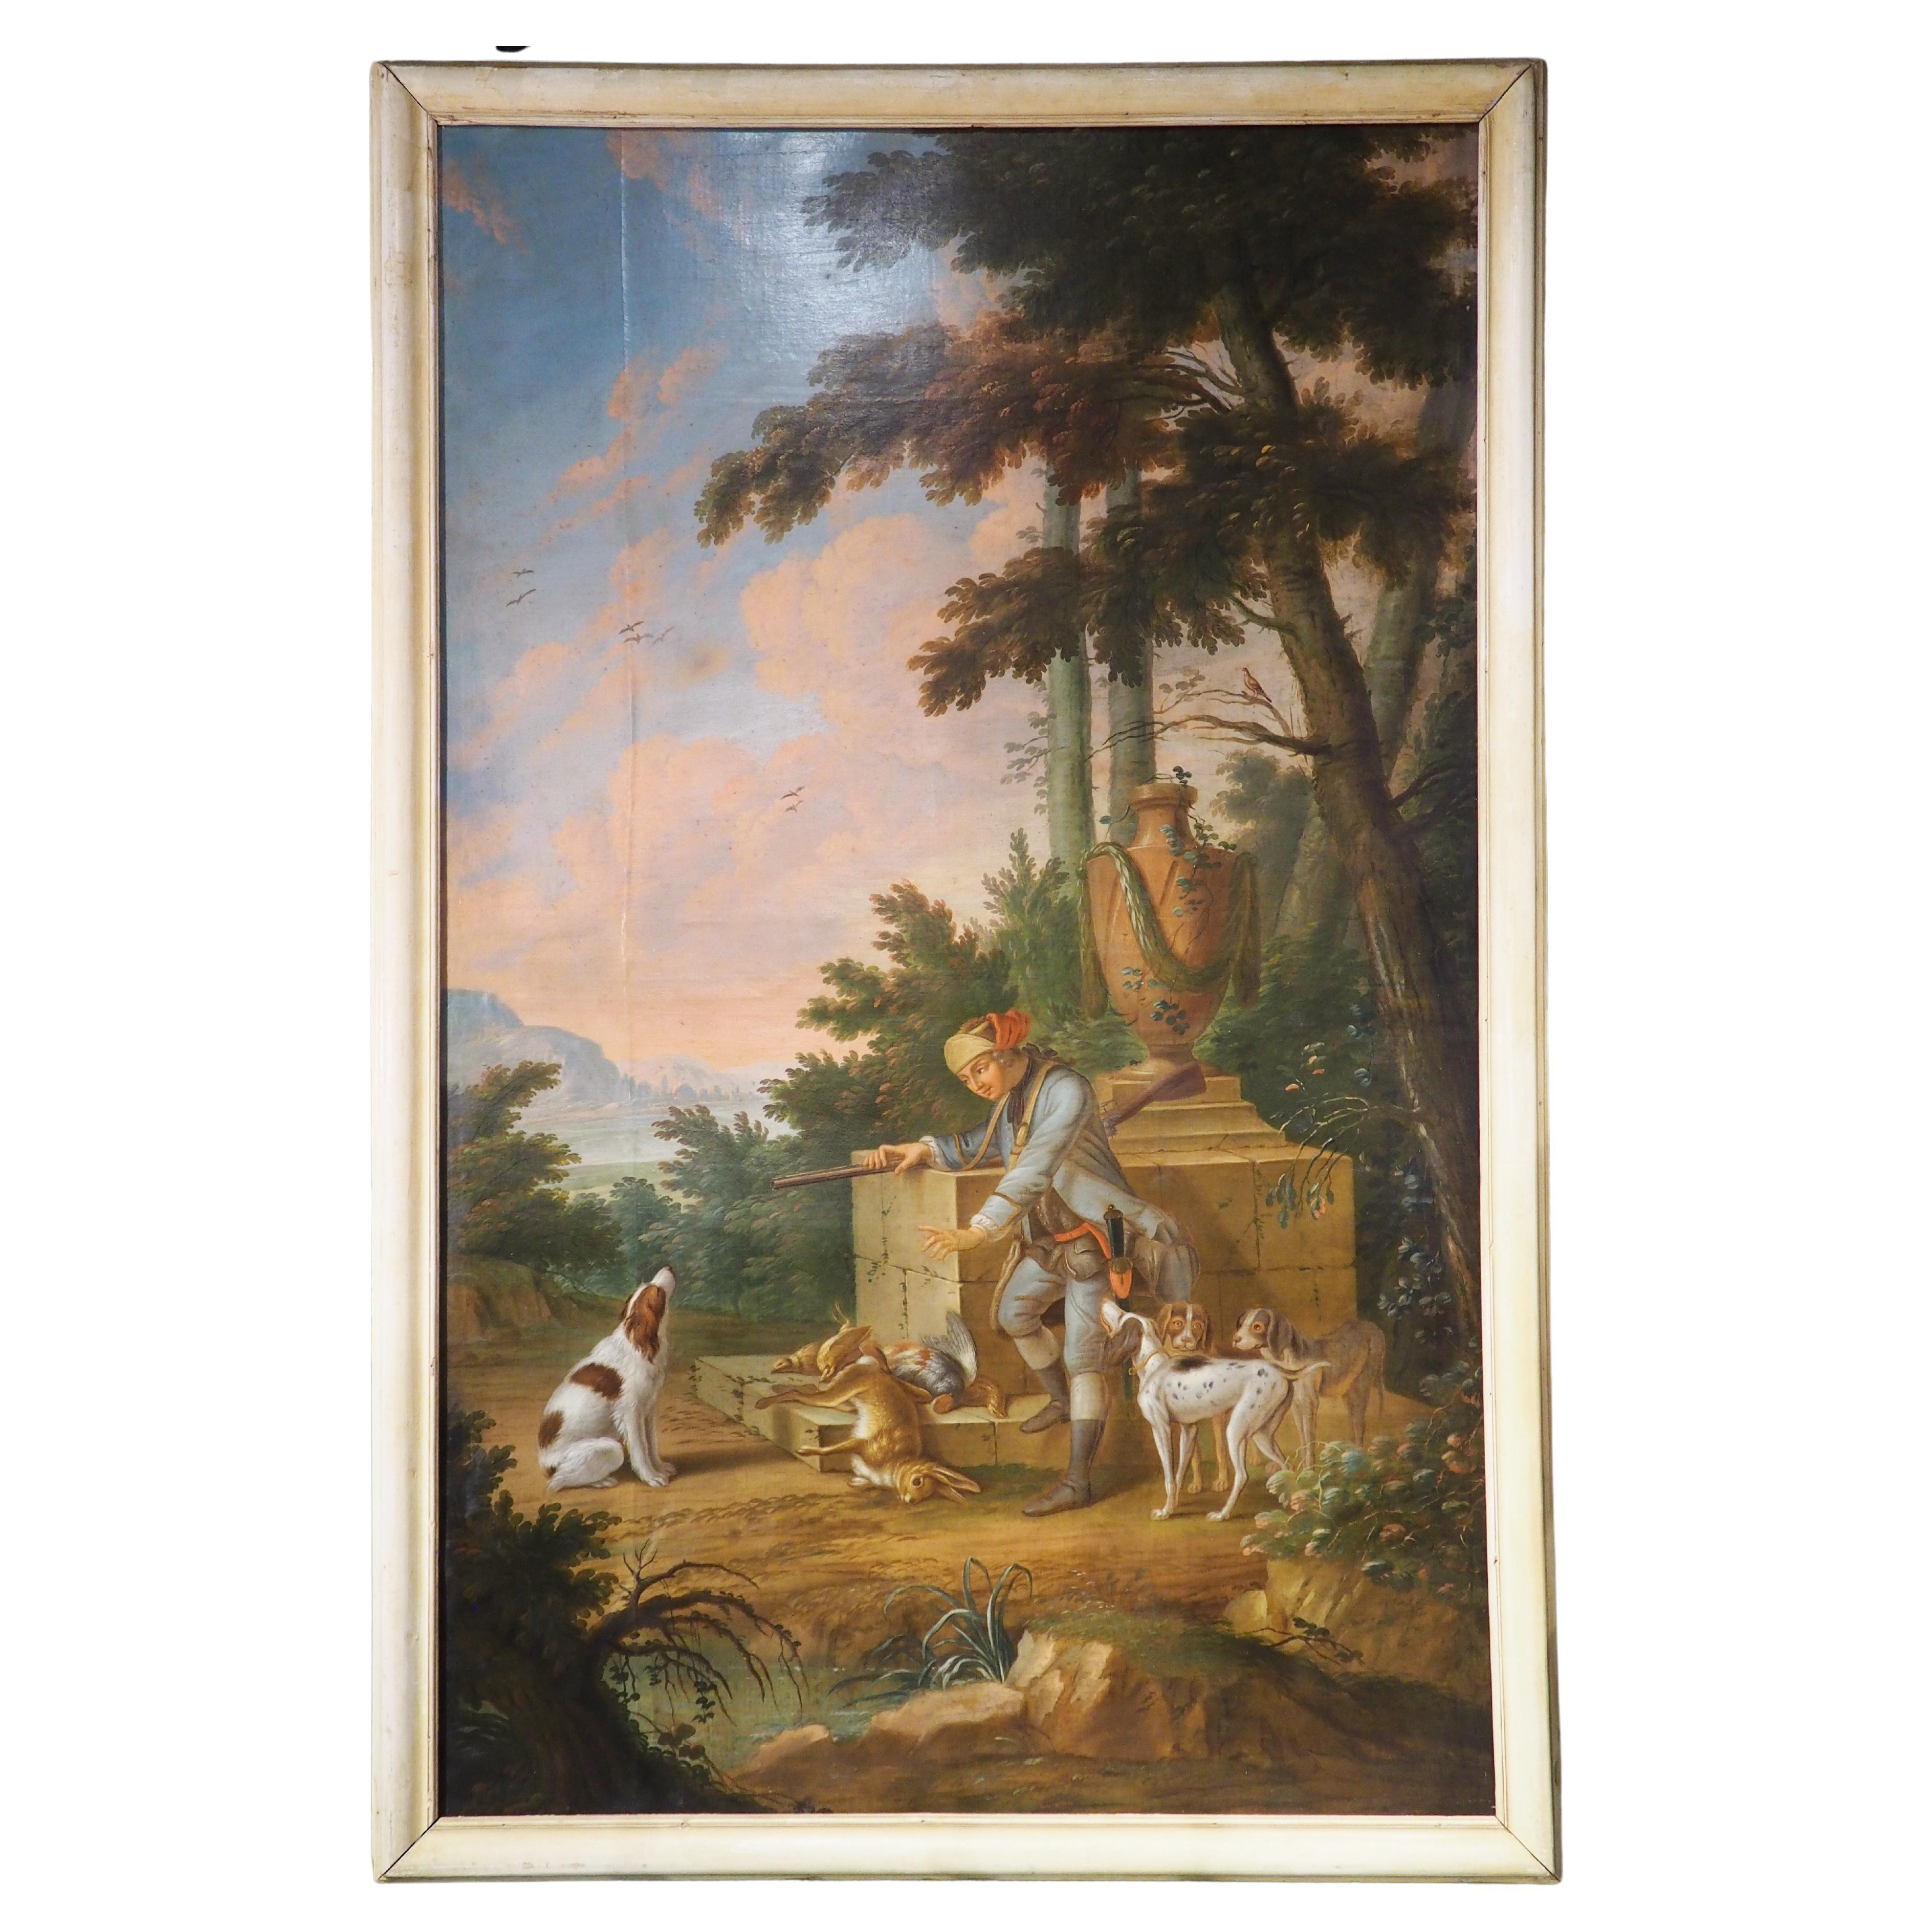 Großes französisches Ölgemälde auf Leinwand aus dem 18. Jahrhundert, das eine Jagdszene darstellt